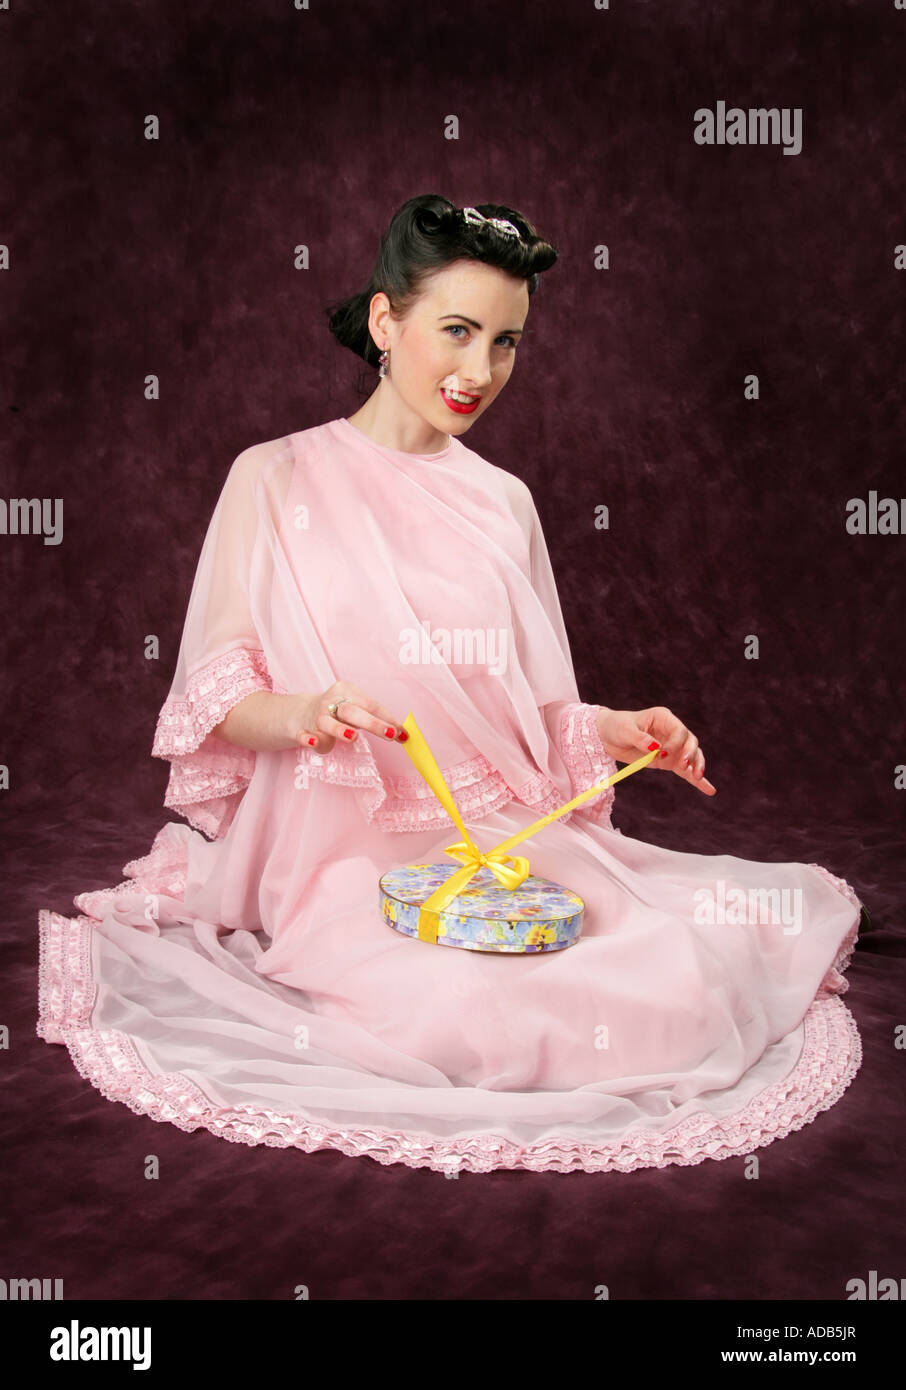 Pin Up Girl dans une robe rose d'ouvrir une boîte de bonbons attachés avec un ruban jaune Banque D'Images